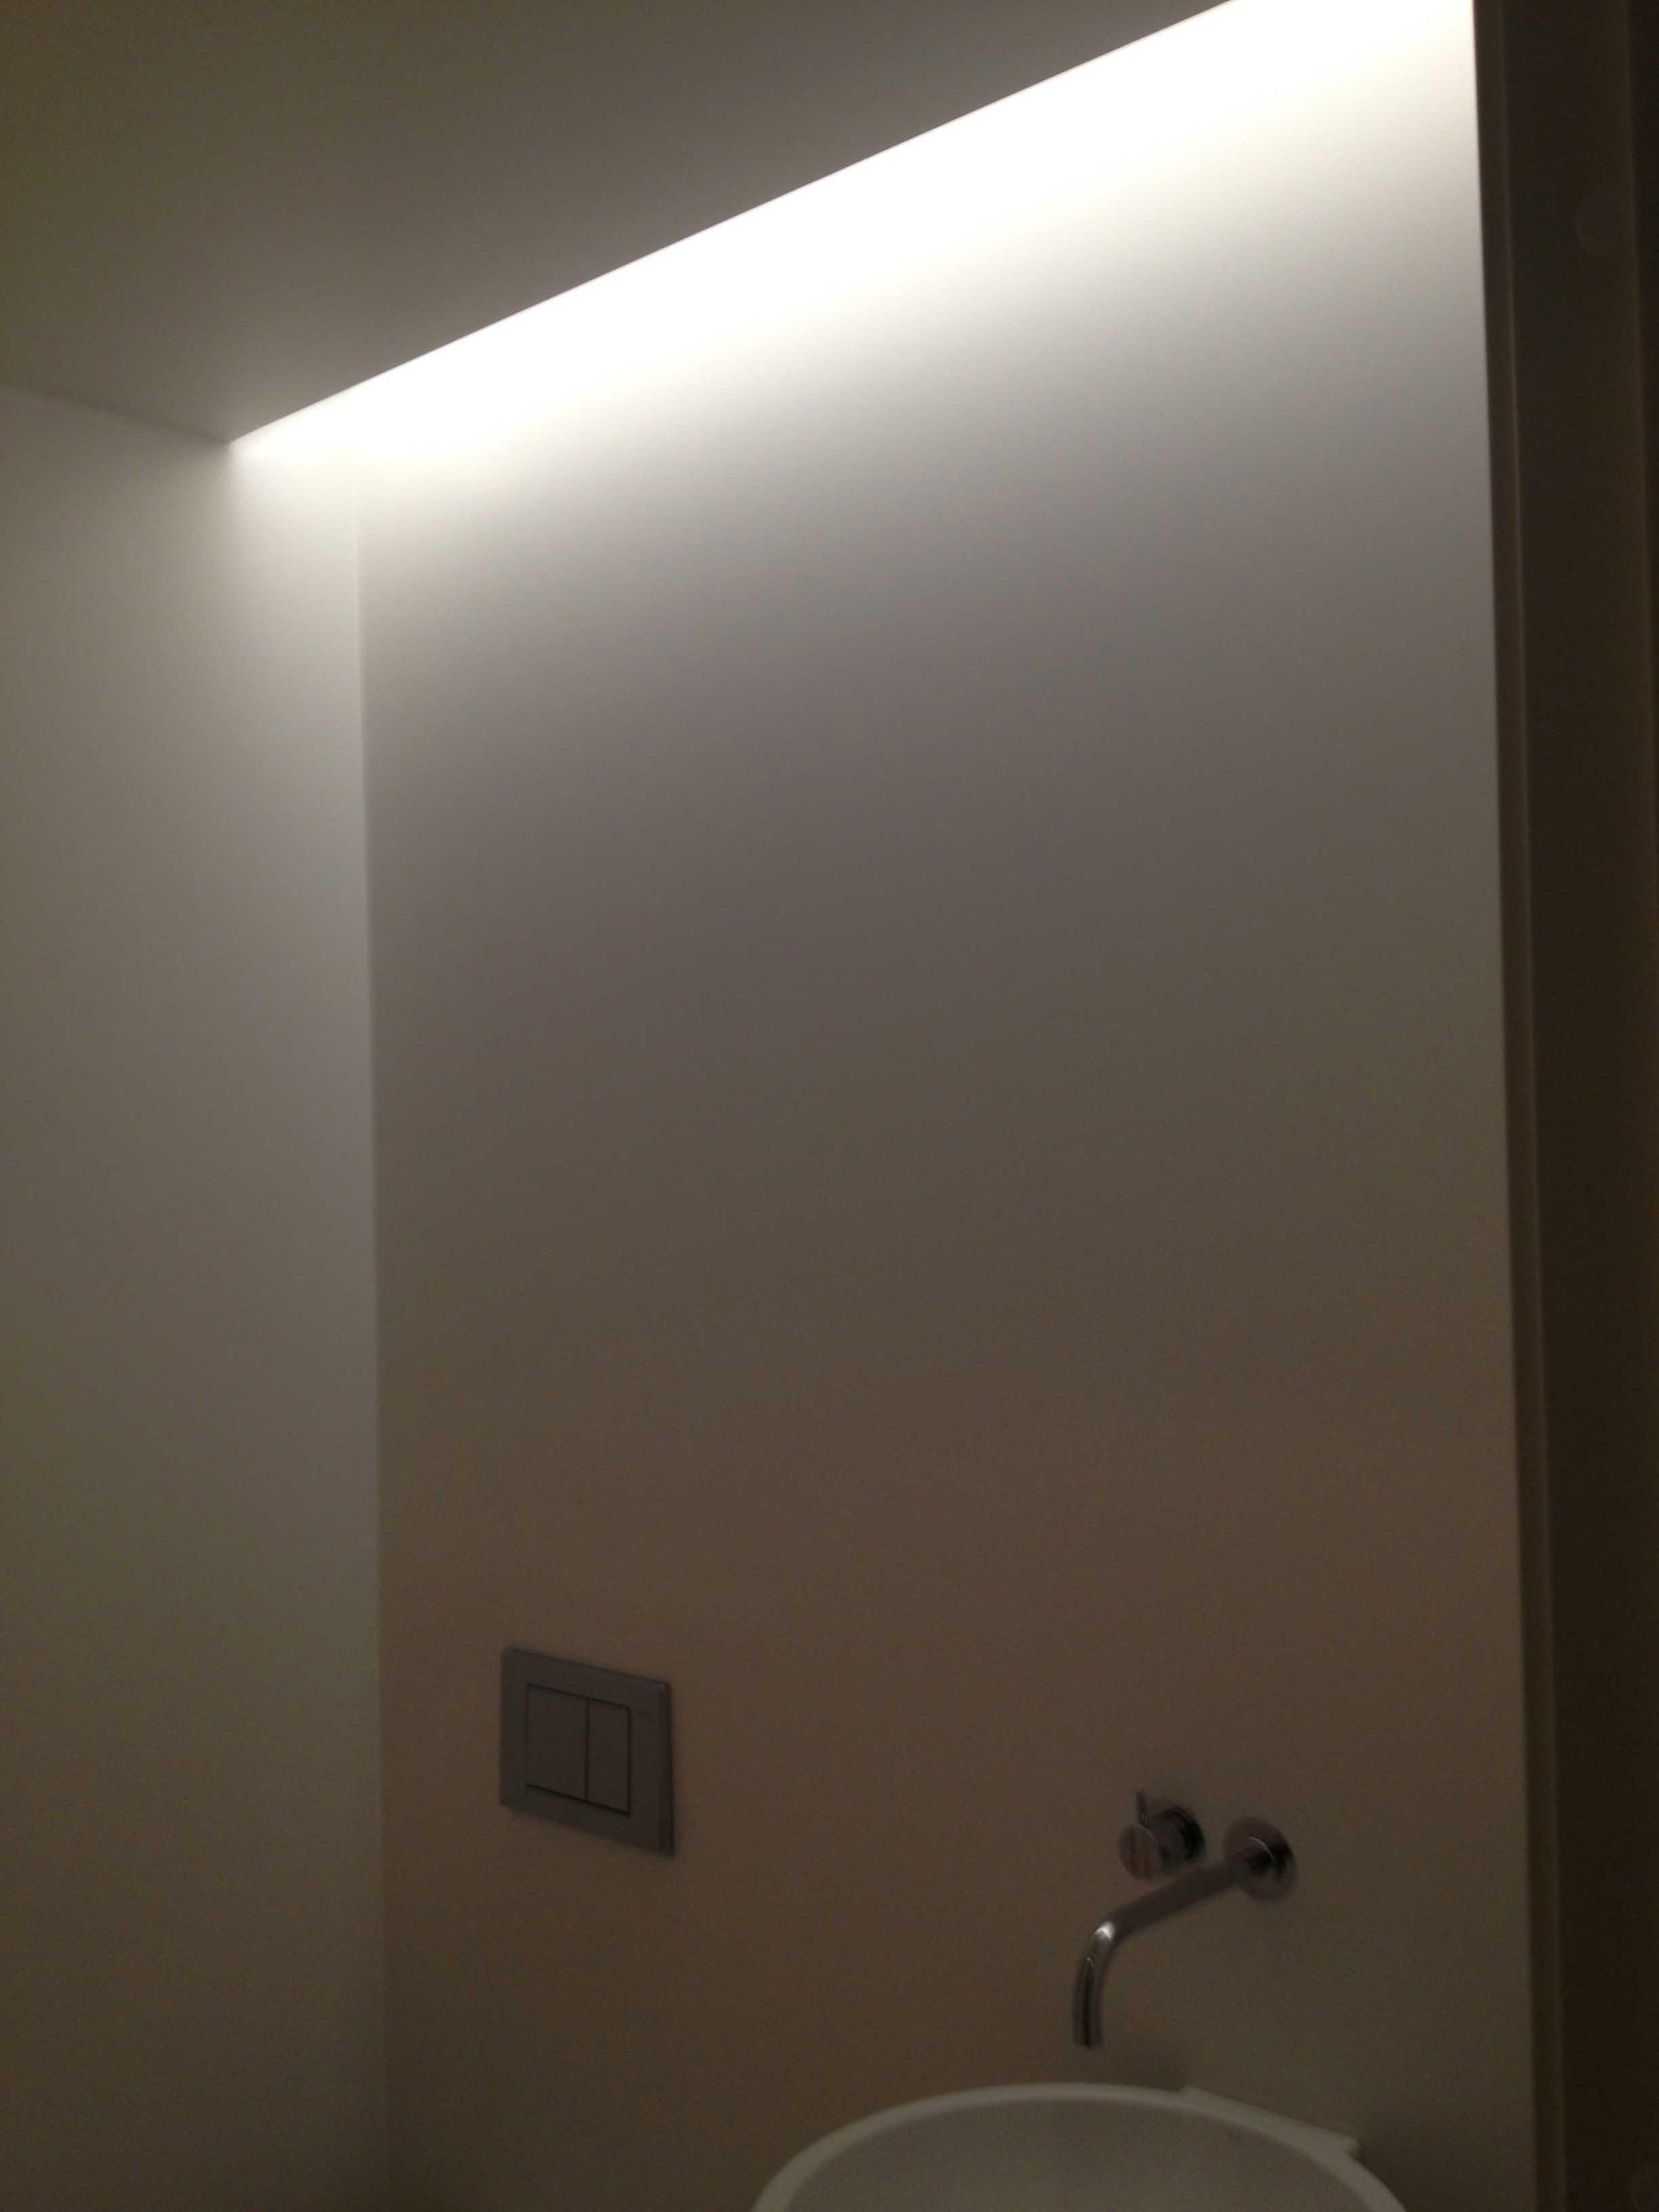 Hjemmelagede LED-"lister" for rombelysning montert i taket - IMG_1253.jpg - pgodoe